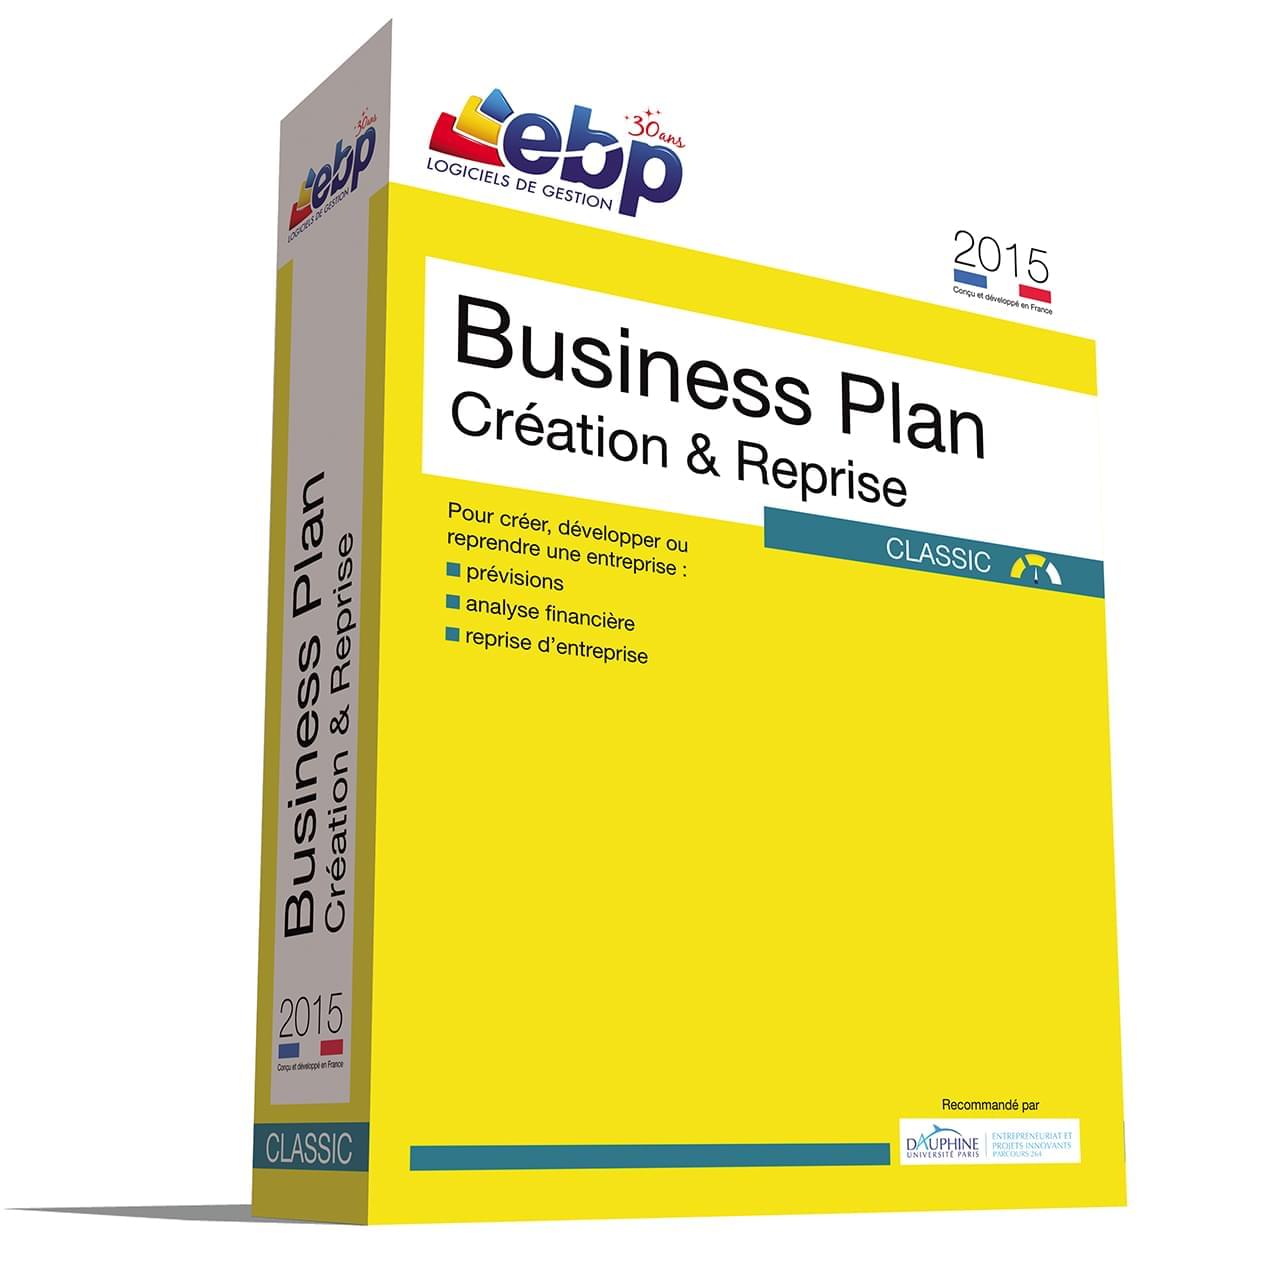 Logiciel application EBP Business Plan Création & Reprise Classic 2015